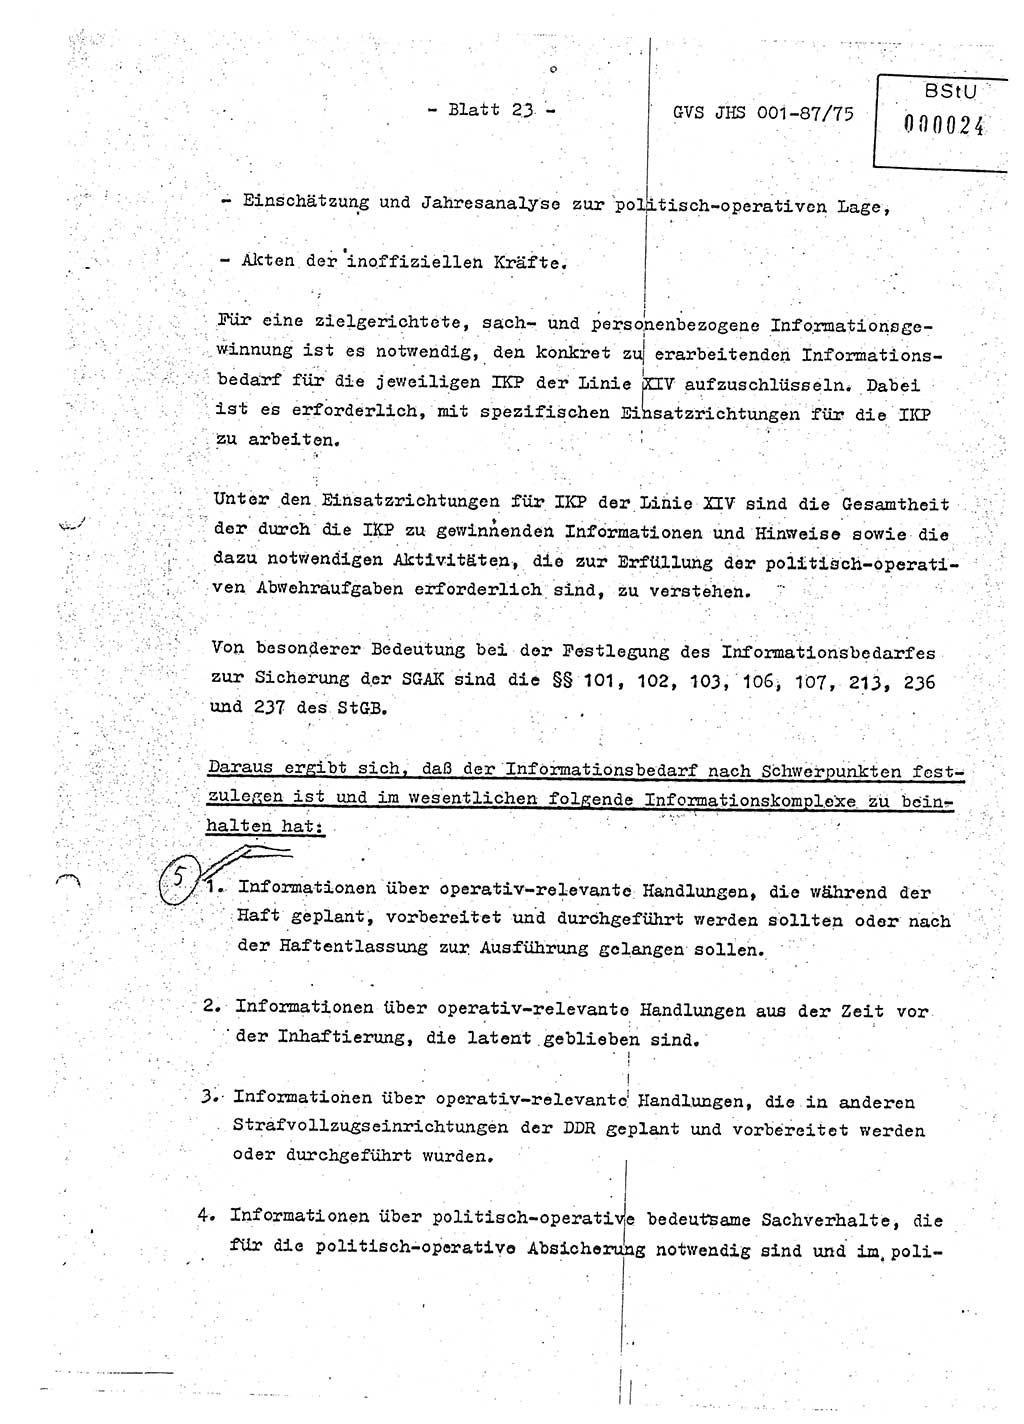 Diplomarbeit Hauptmann Volkmar Heinz (Abt. ⅩⅣ), Oberleutnant Lothar Rüdiger (BV Lpz. Abt. Ⅺ), Ministerium für Staatssicherheit (MfS) [Deutsche Demokratische Republik (DDR)], Juristische Hochschule (JHS), Geheime Verschlußsache (GVS) o001-87/75, Potsdam 1975, Seite 23 (Dipl.-Arb. MfS DDR JHS GVS o001-87/75 1975, S. 23)